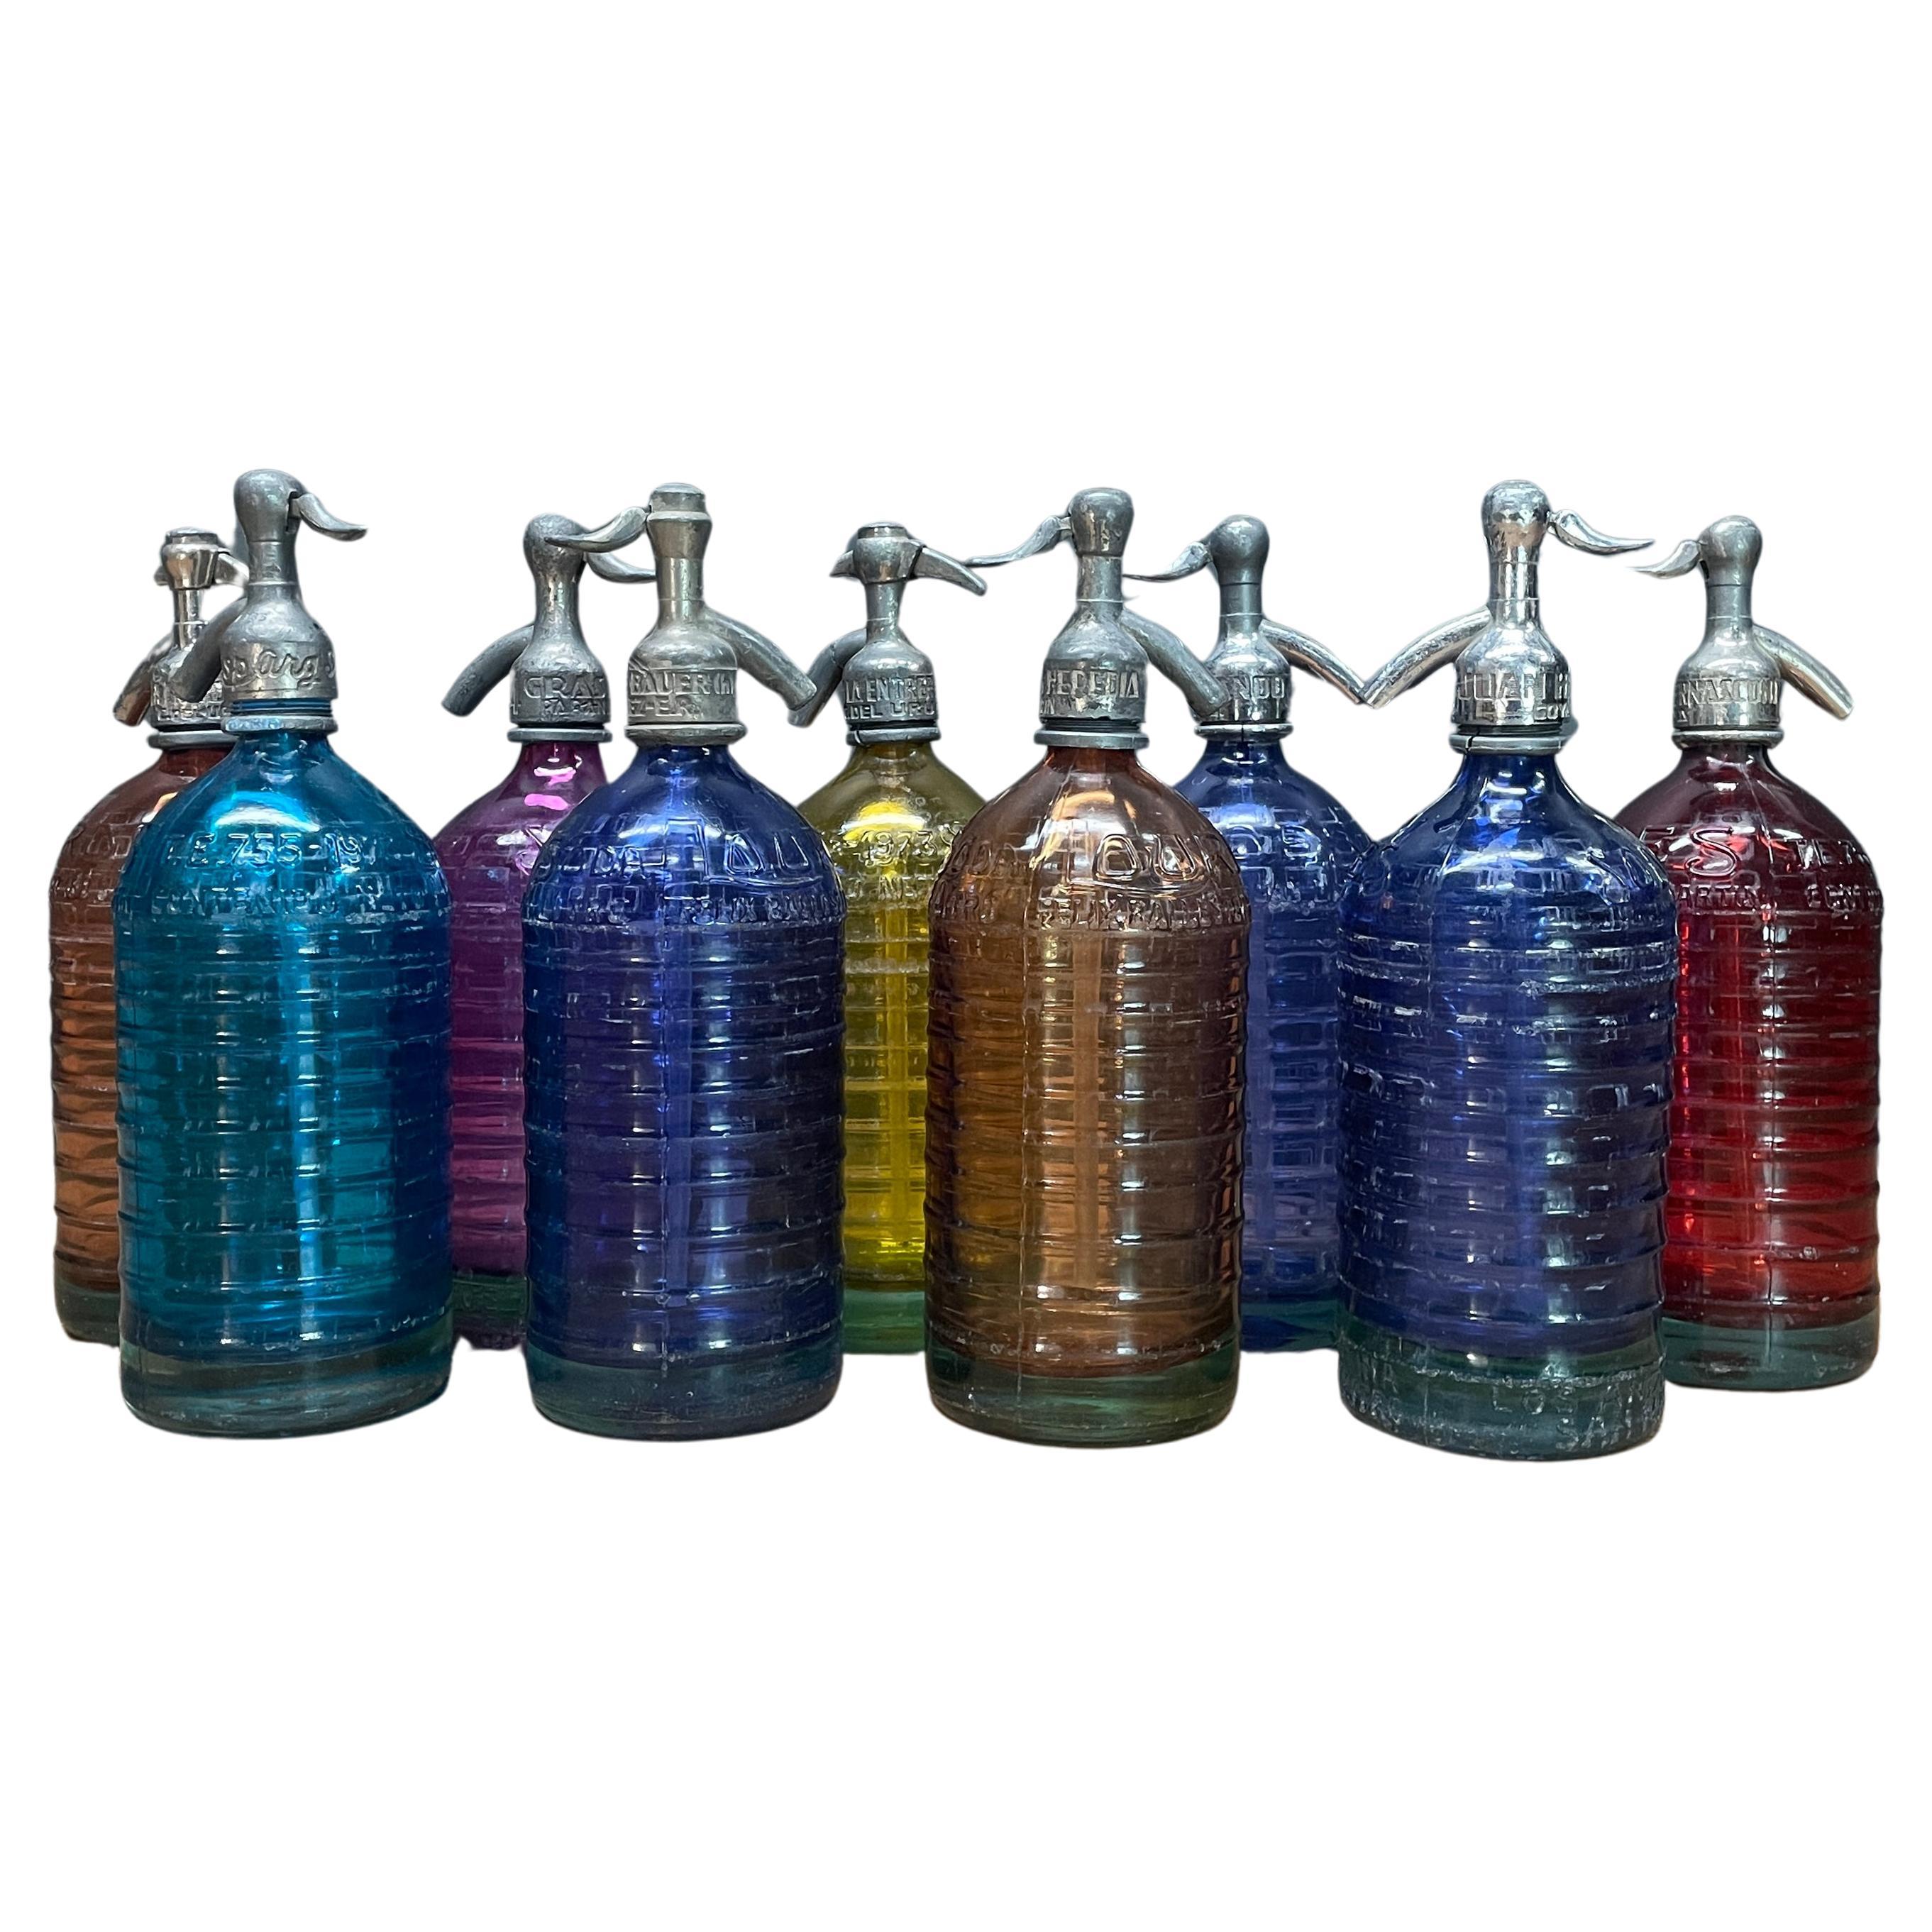 Collection de bouteilles de soda Lourdes Siphon Seltzer des années 1940, décor vintage coloré en verre